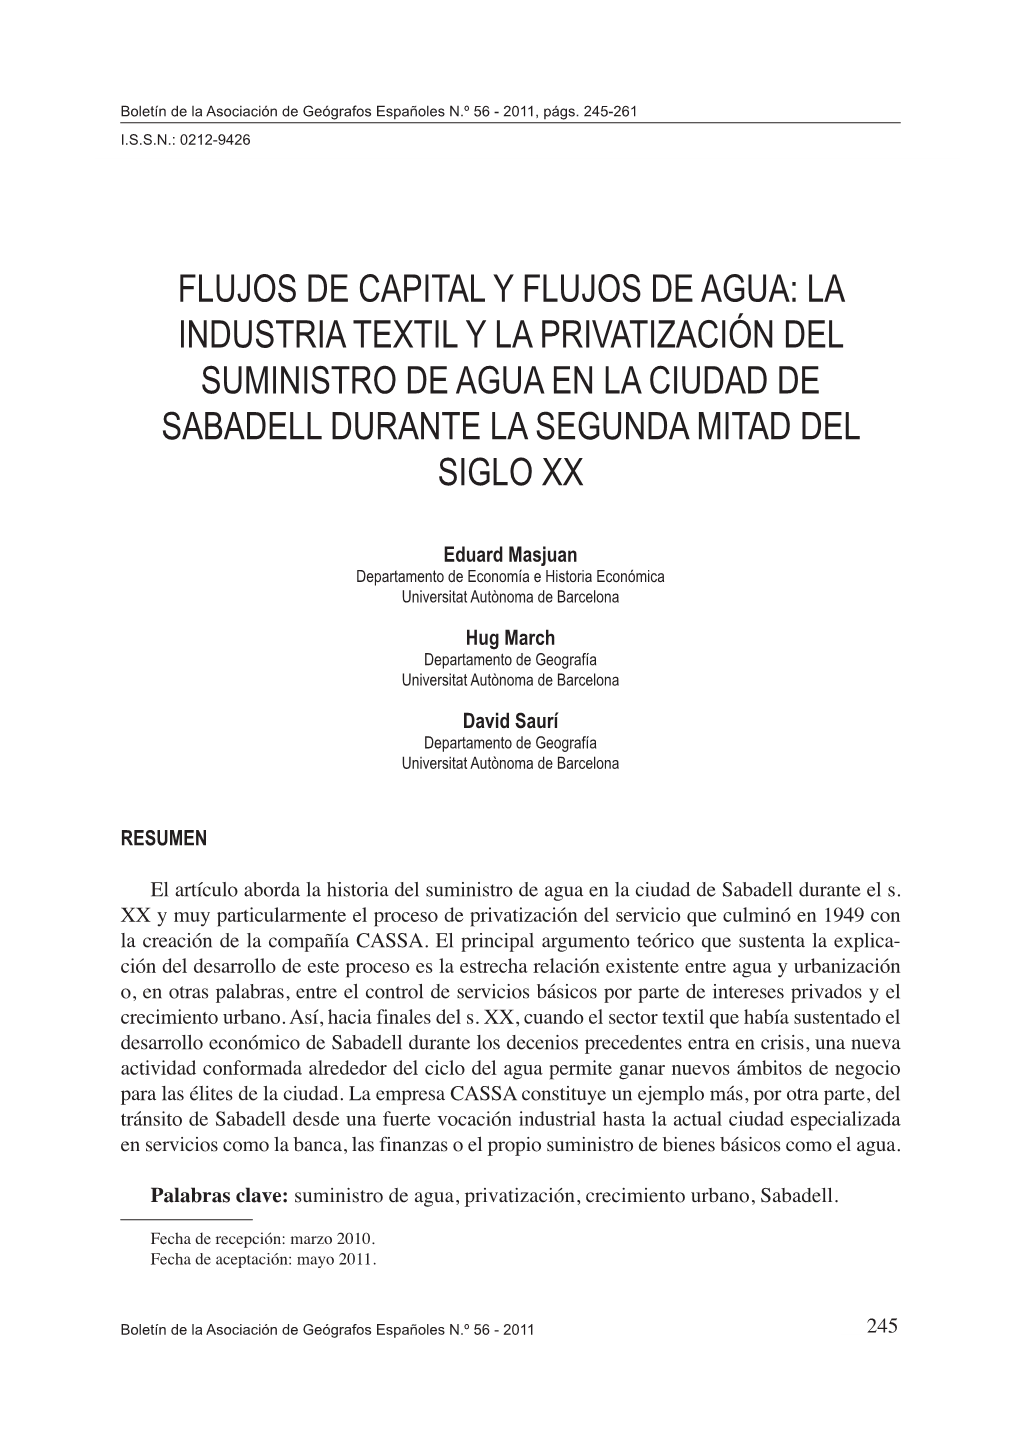 Flujos De Capital Y Flujos De Agua: La Industria Textil Y La Privatización Del Suministro De Agua En La Ciudad De Sabadell Durante La Segunda Mitad Del Siglo Xx